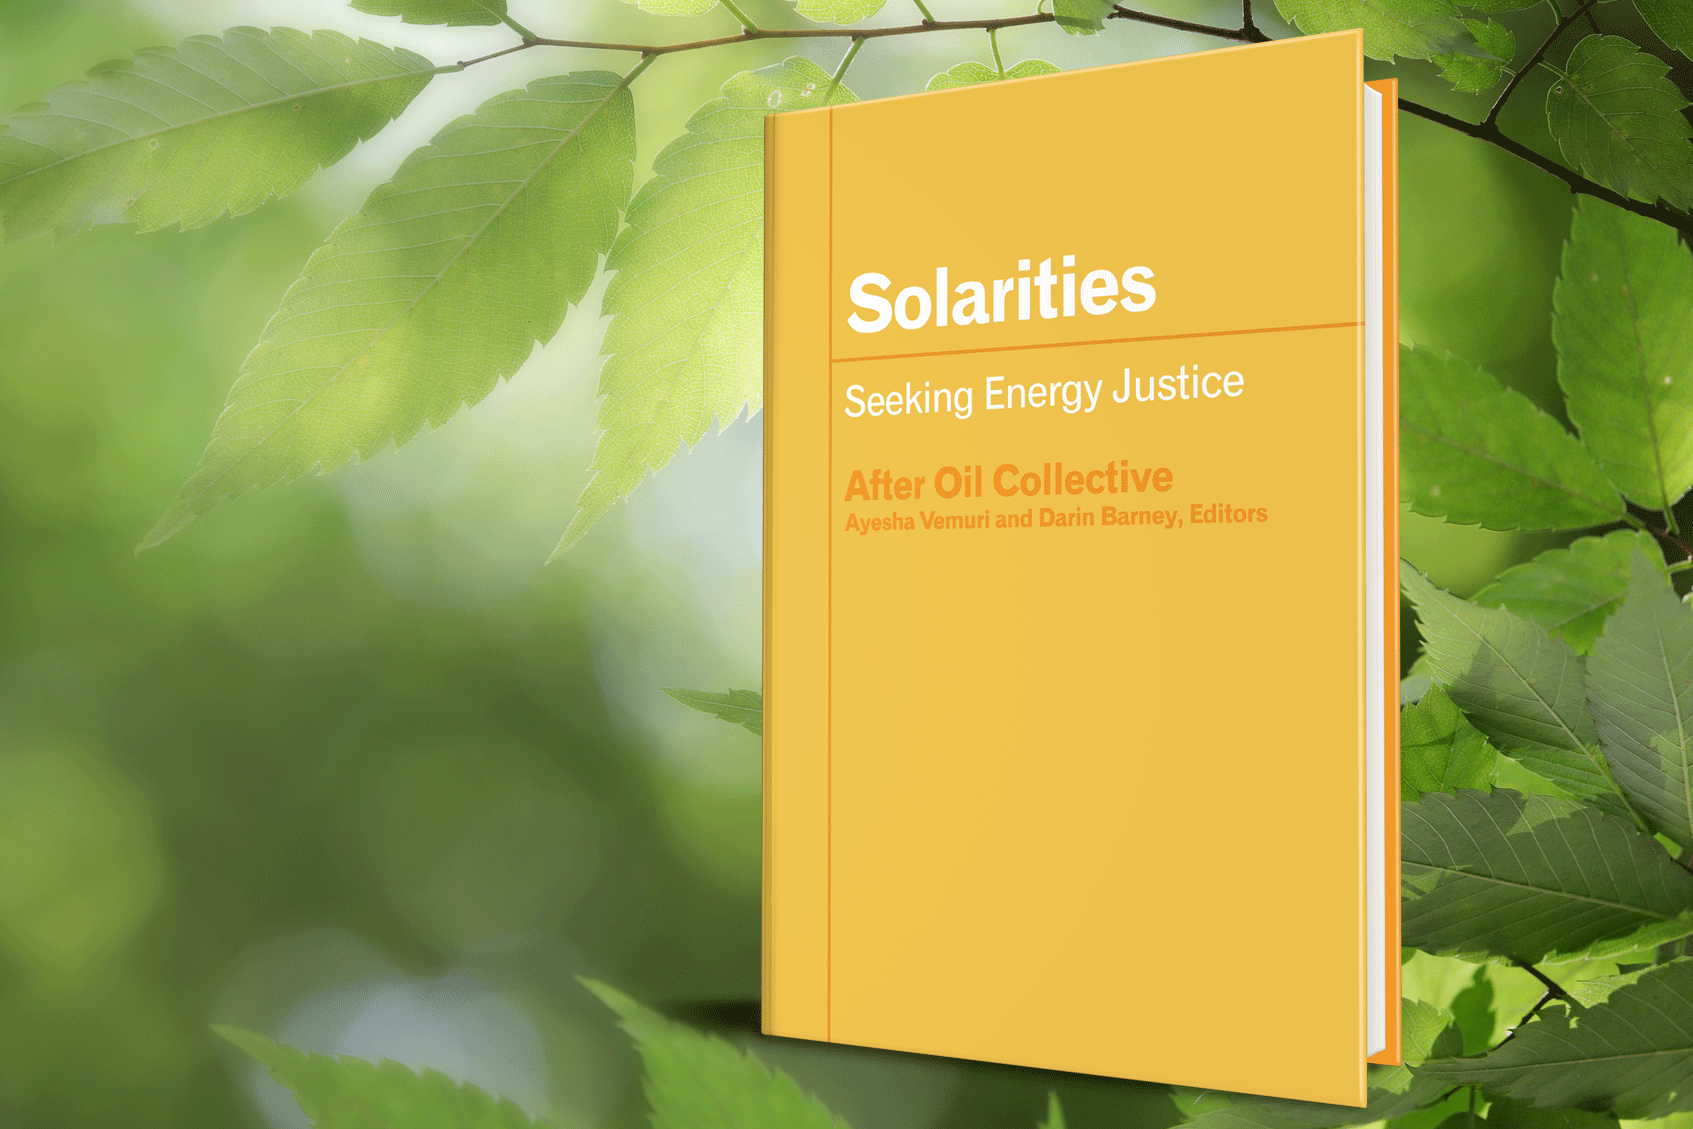  Solarities: Seeking Energy Justice 